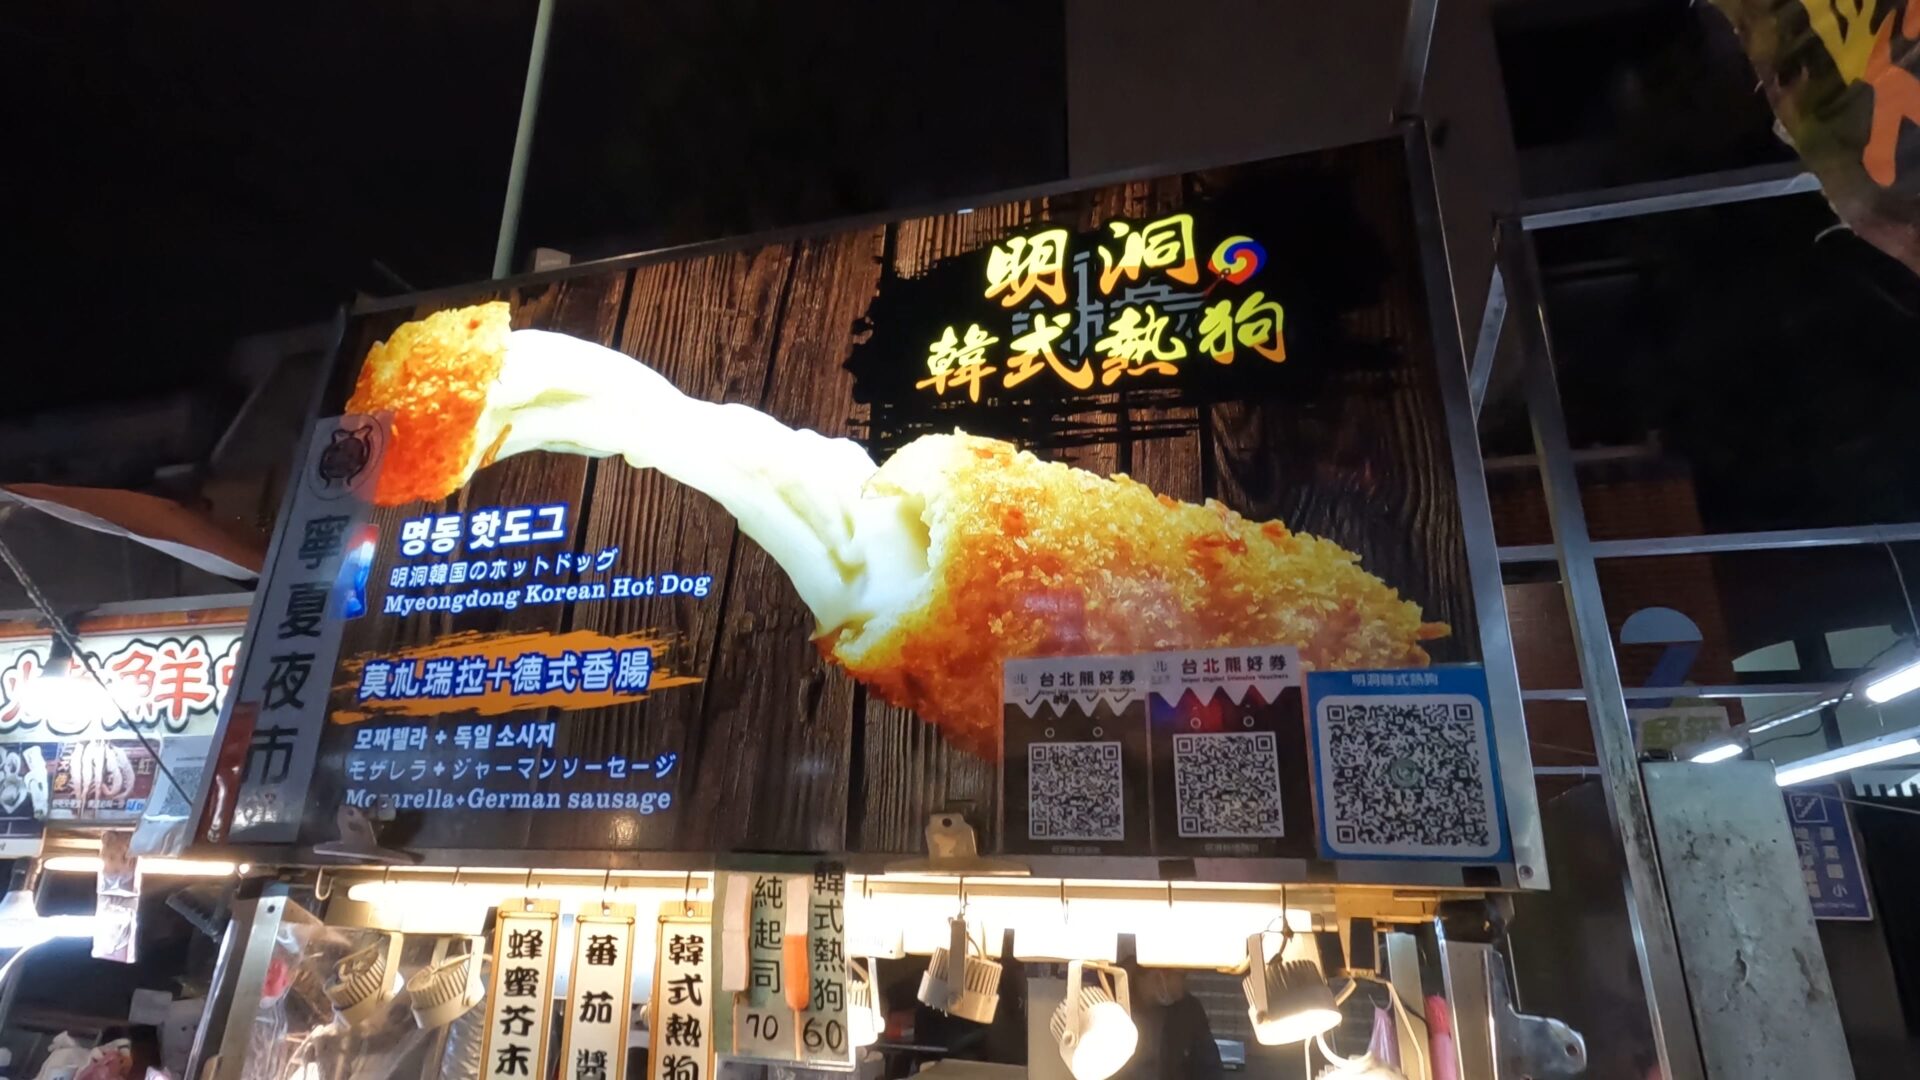 韓国式チーズドッグ屋の看板